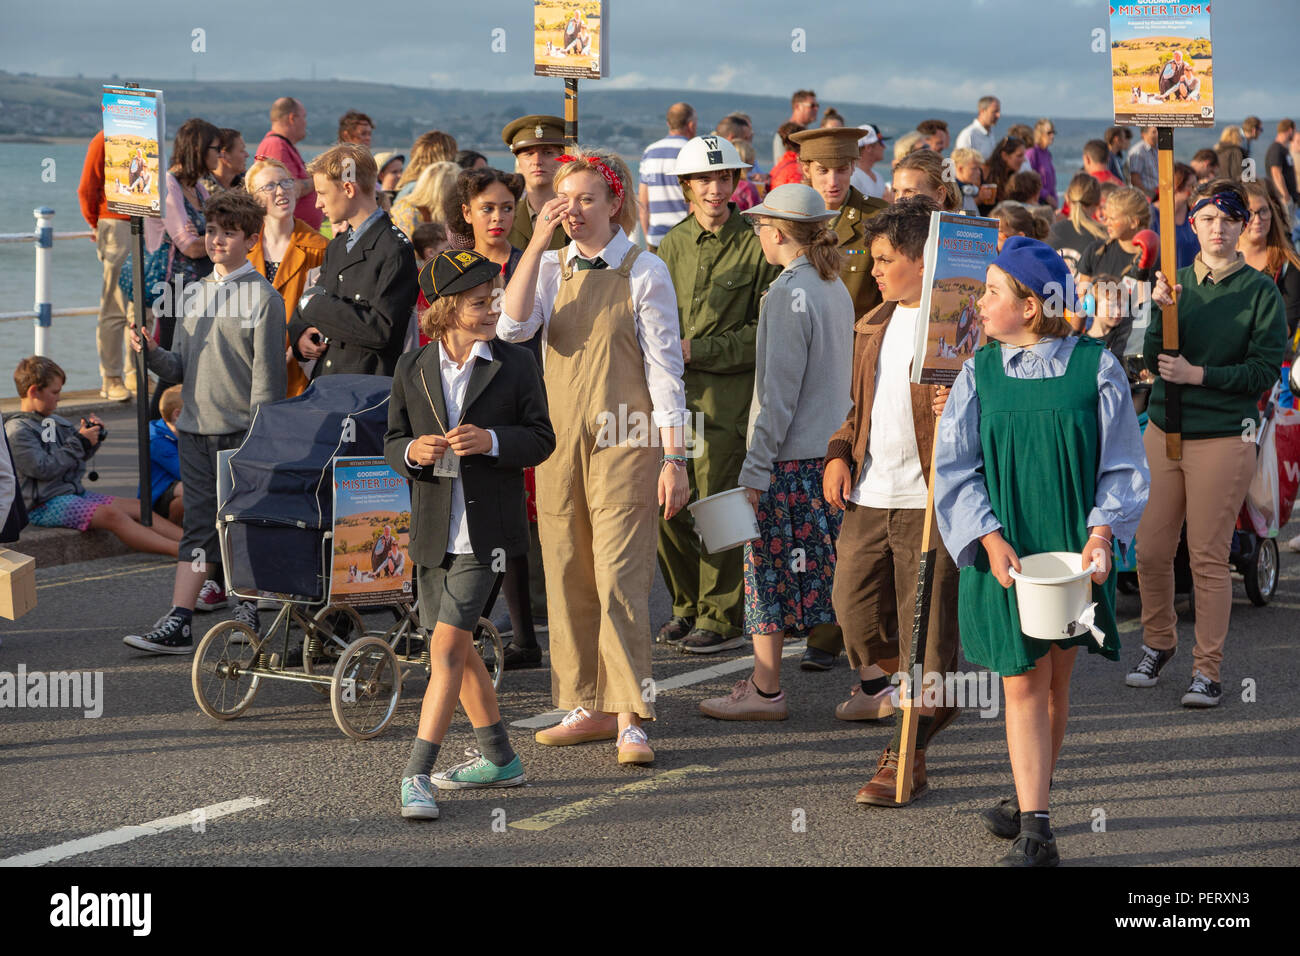 Les foules affluent pour regarder le carnaval de Weymouth, sur une belle journée d'été chaude. Banque D'Images